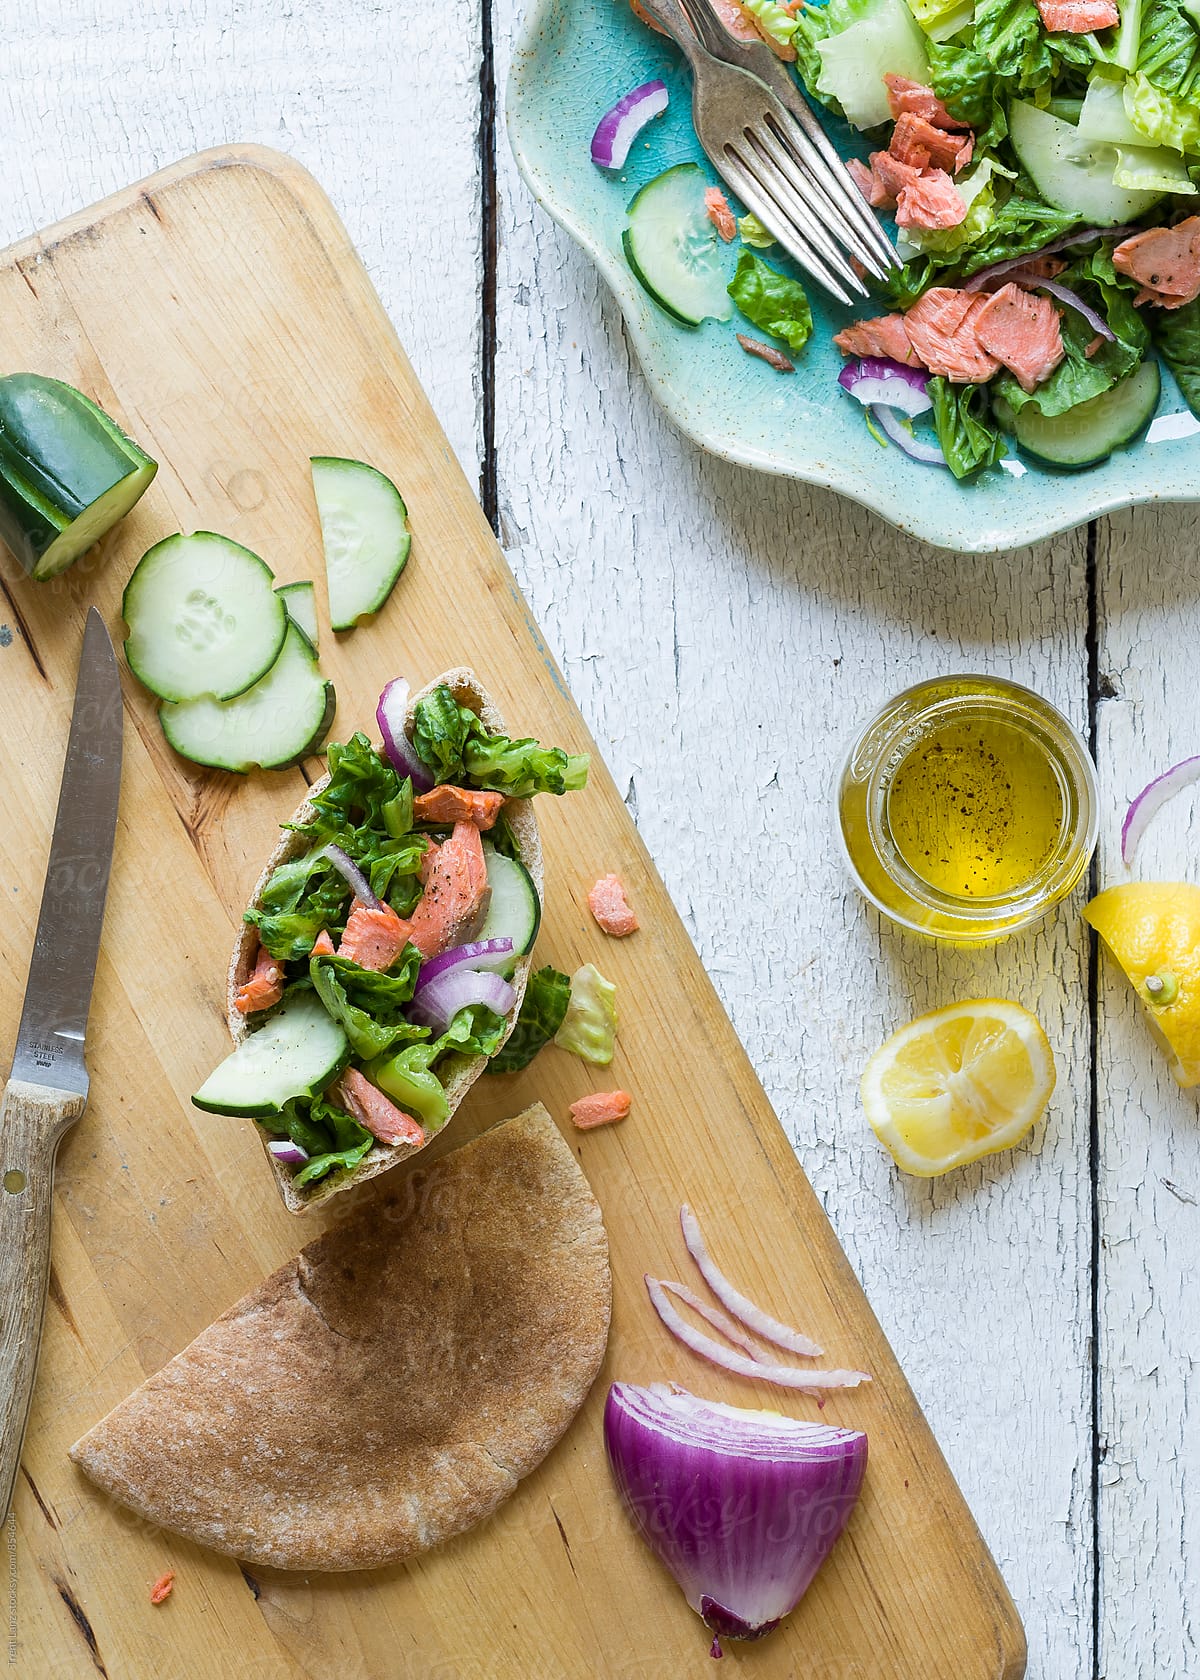 Salmon salad pita sandwich on wooden table